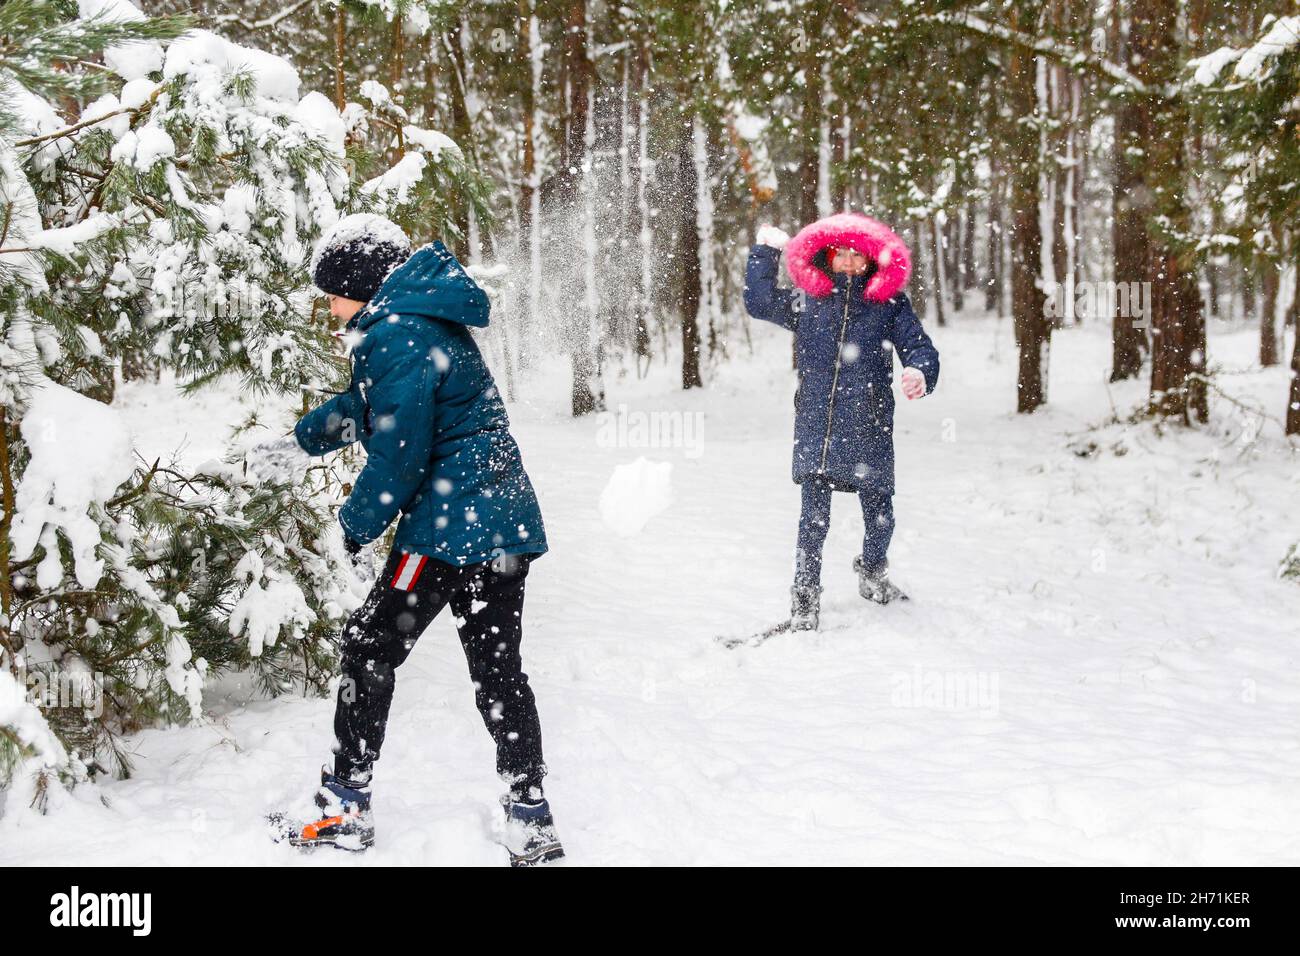 Le garçon balançant une boule de neige avec une fille.Enfants amusants à Winter Park jouant des boules de neige, passant du temps à l'extérieur.Forêt enneigée en hiver.Froid Banque D'Images